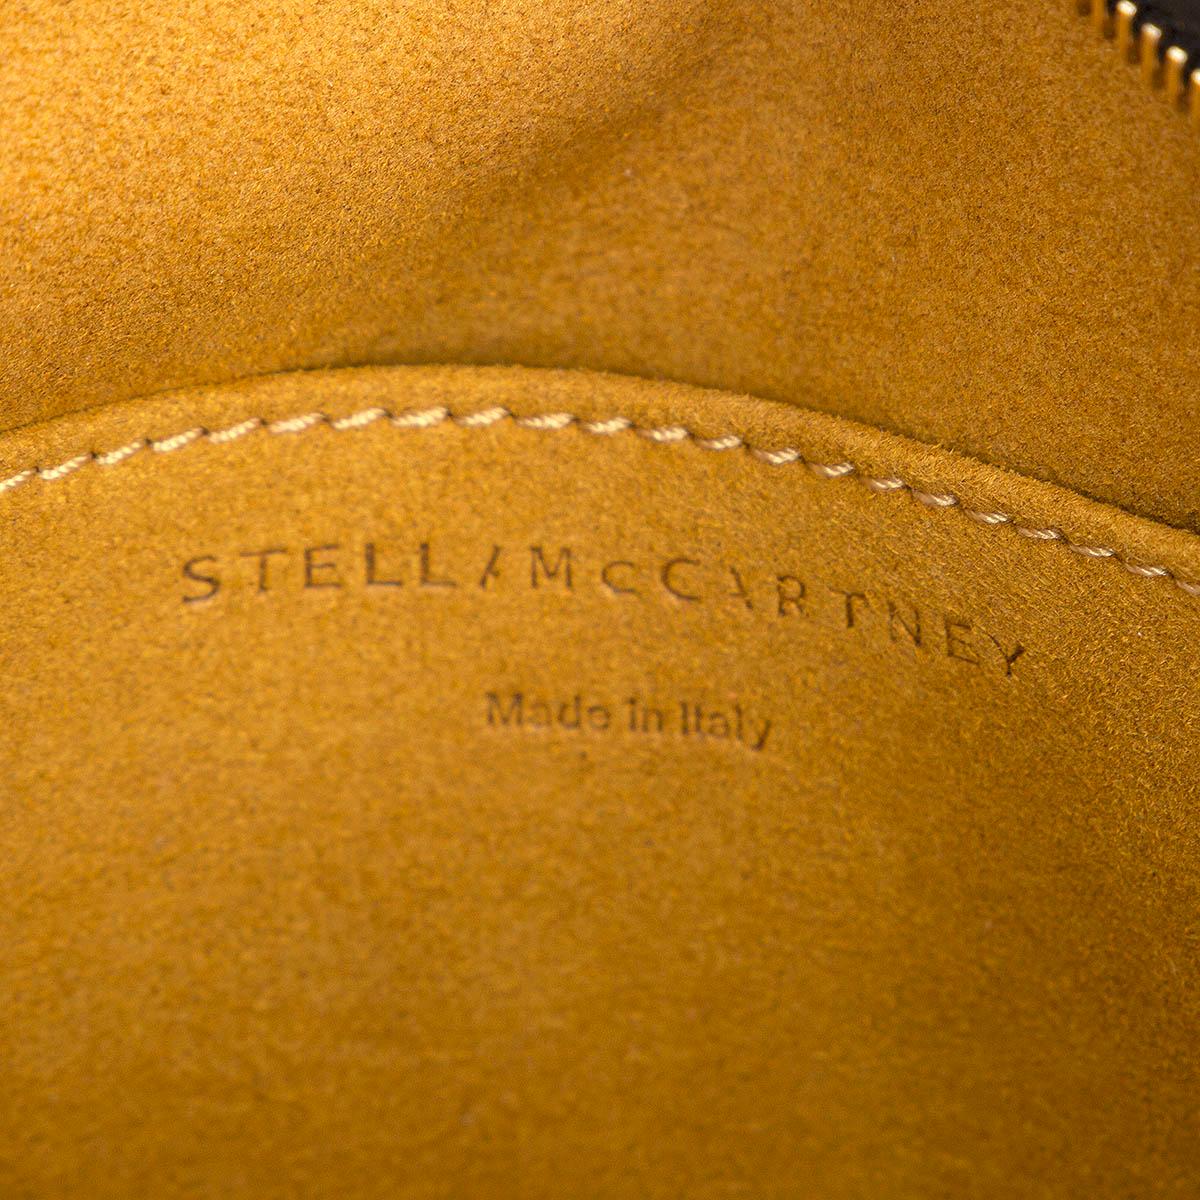 STELLA MCCARTNEY black leather LOGO CAMERA Shoulder Bag 2